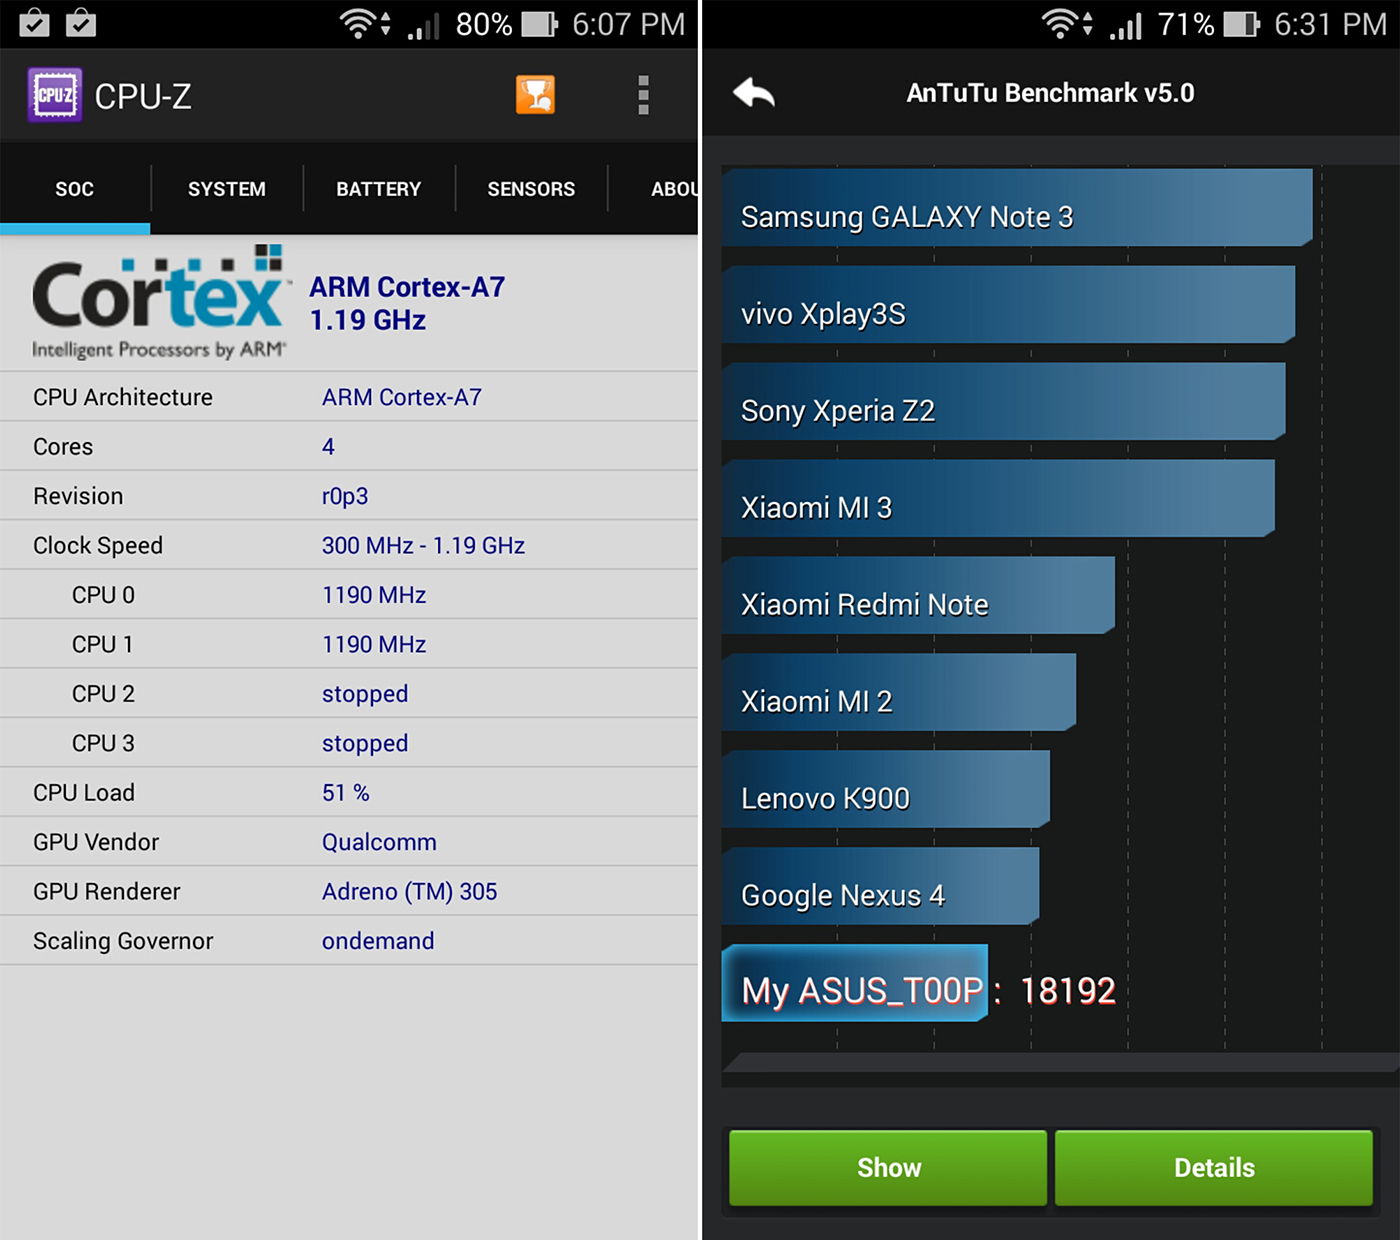 พรีวิว ASUS Zenfone 5 LTE (เครื่องไต้หวัน) พร้อมผลเทสคะแนนเล็กน้อย